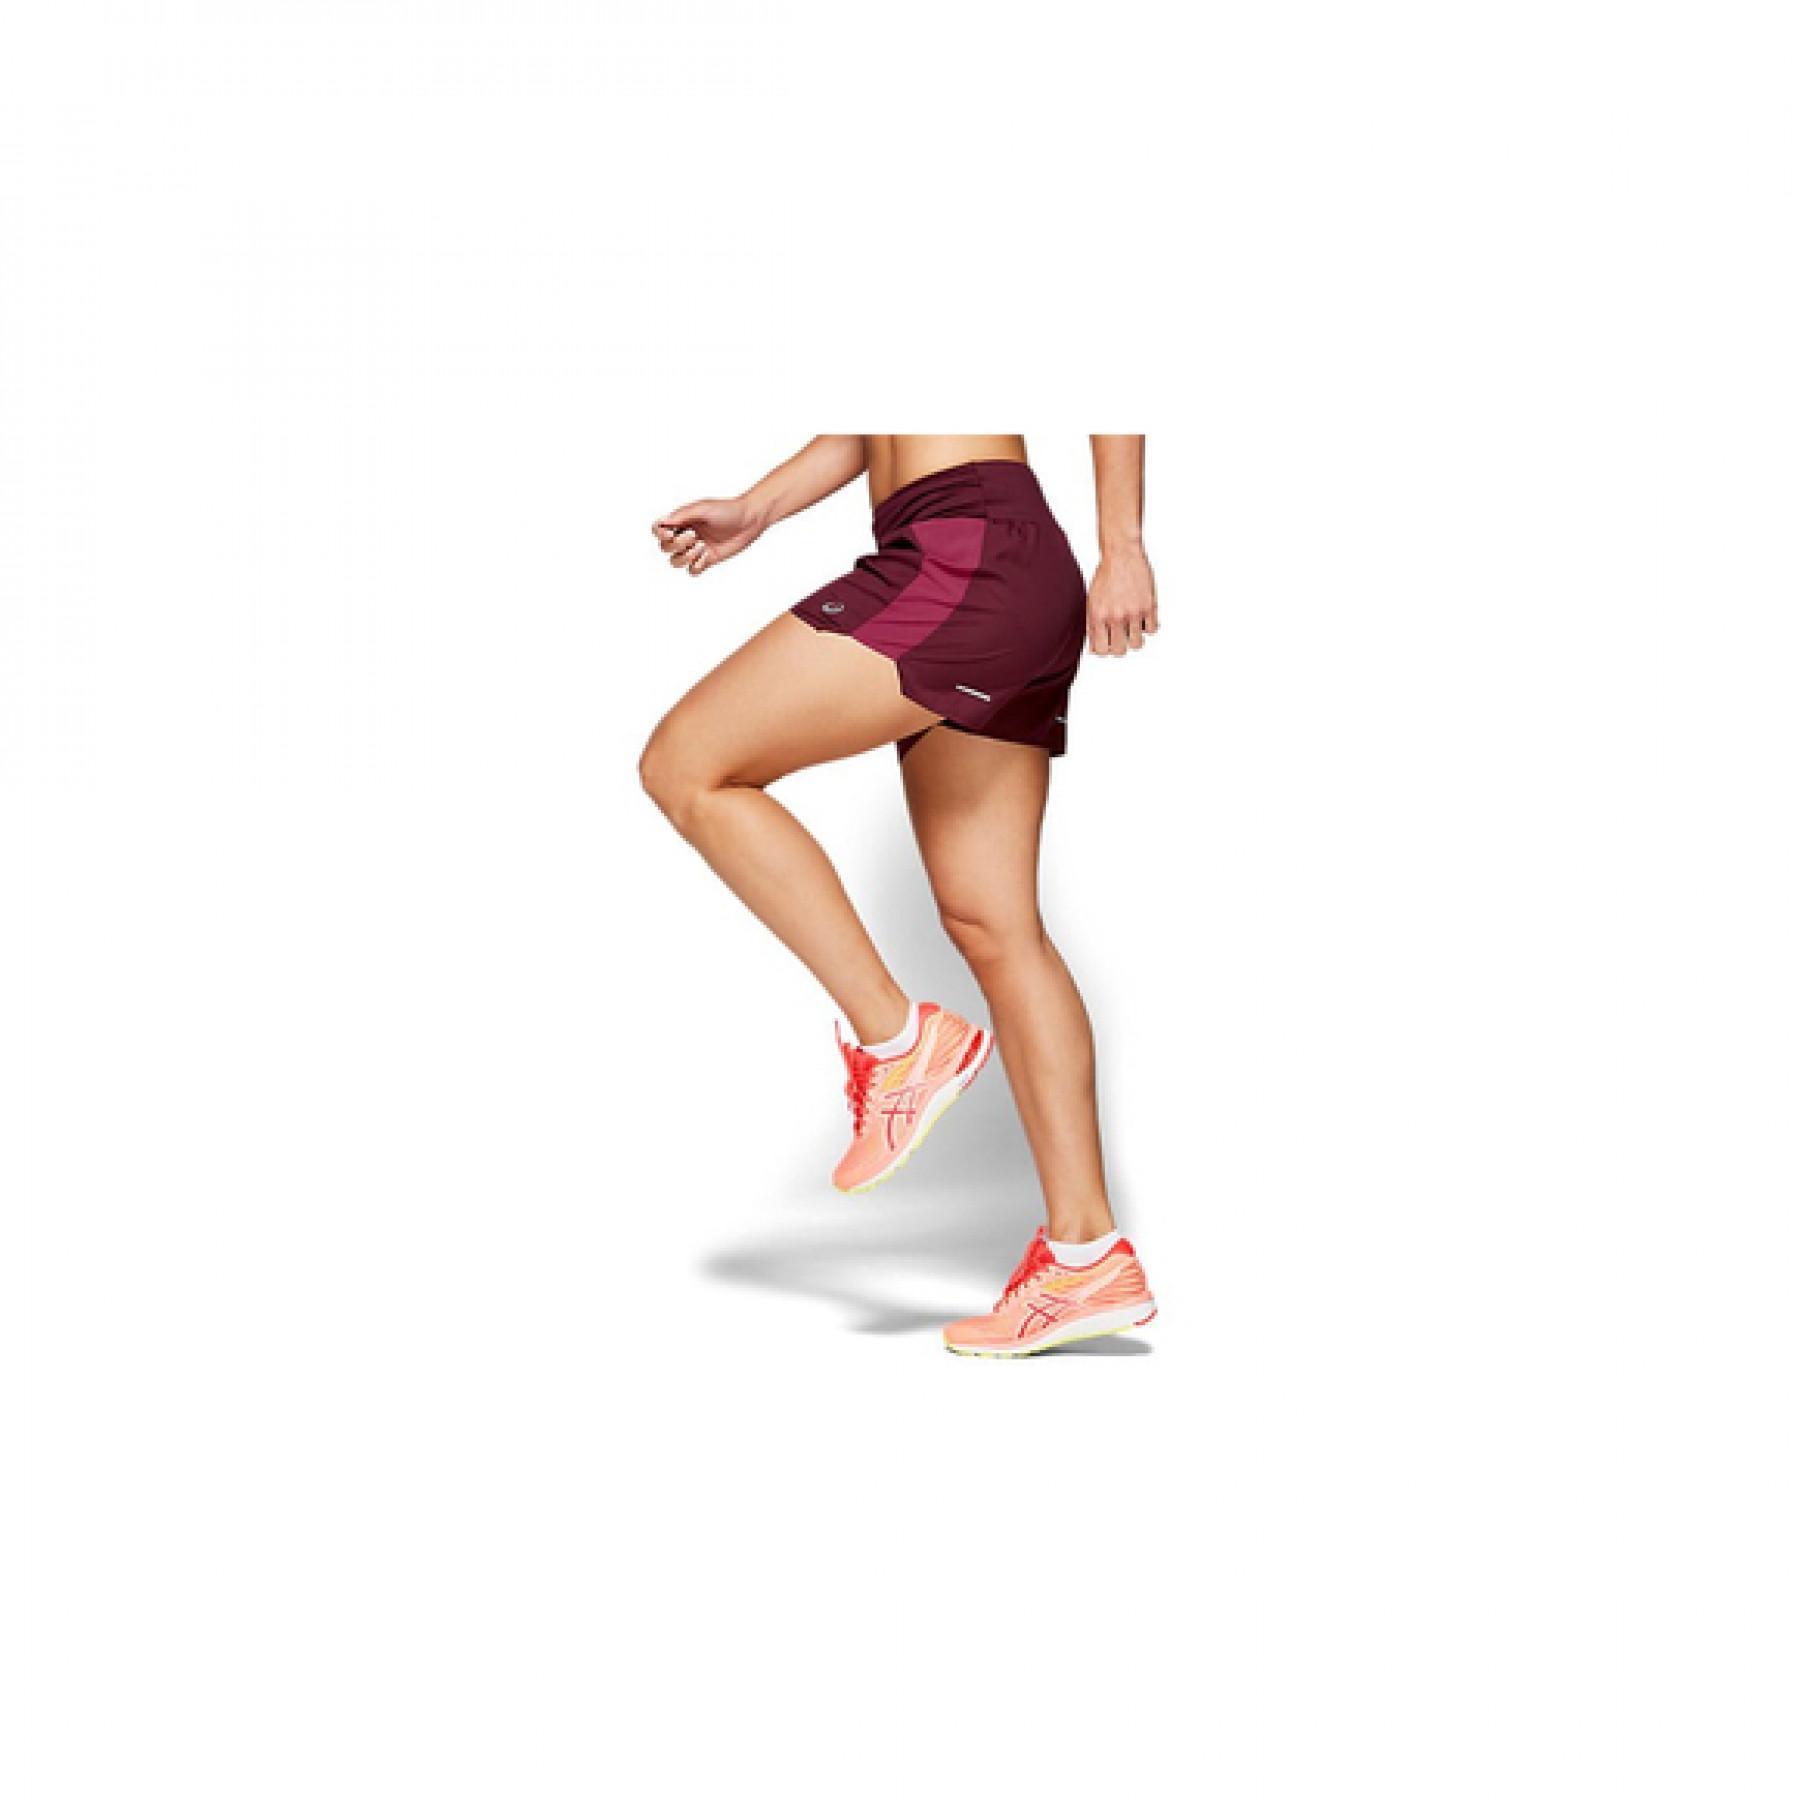 Damen-Shorts Asics 3.5in